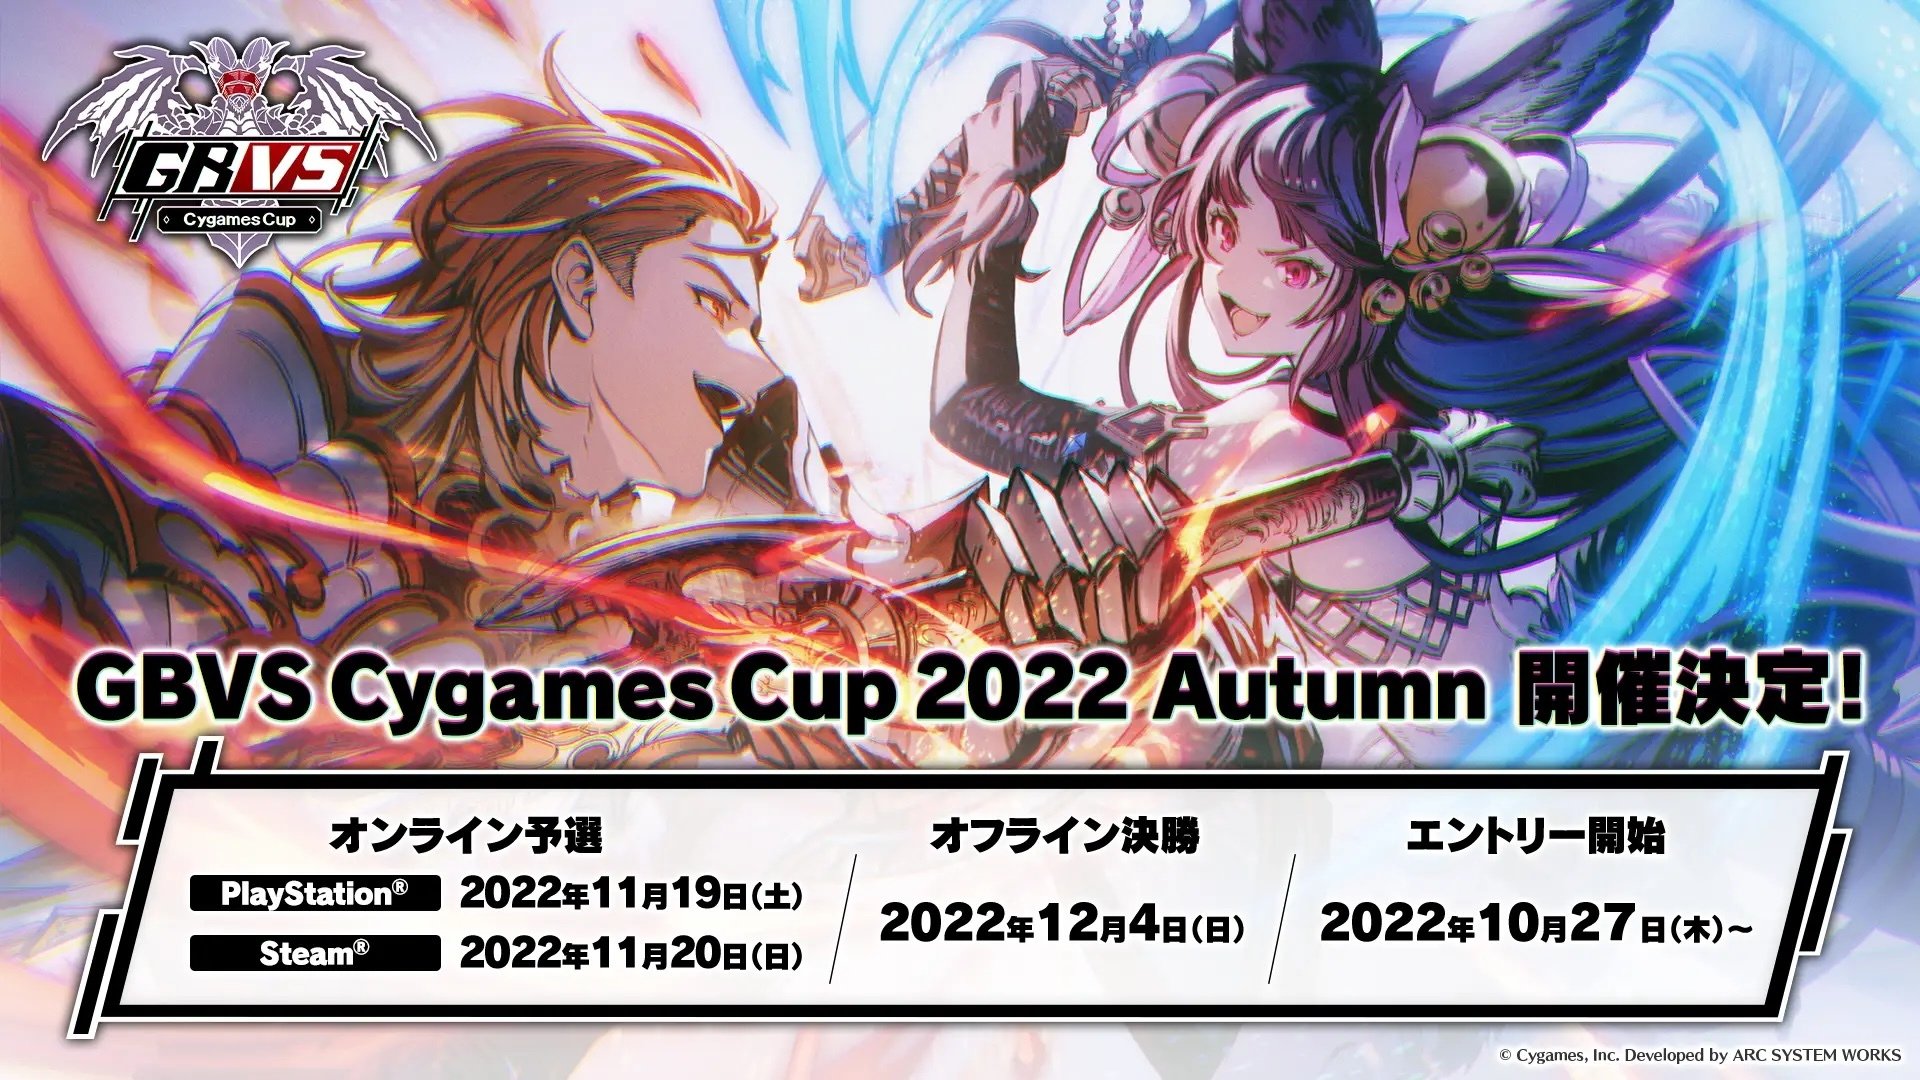 官方錦標賽“GBVS Cygames Cup 2022 Autumn”